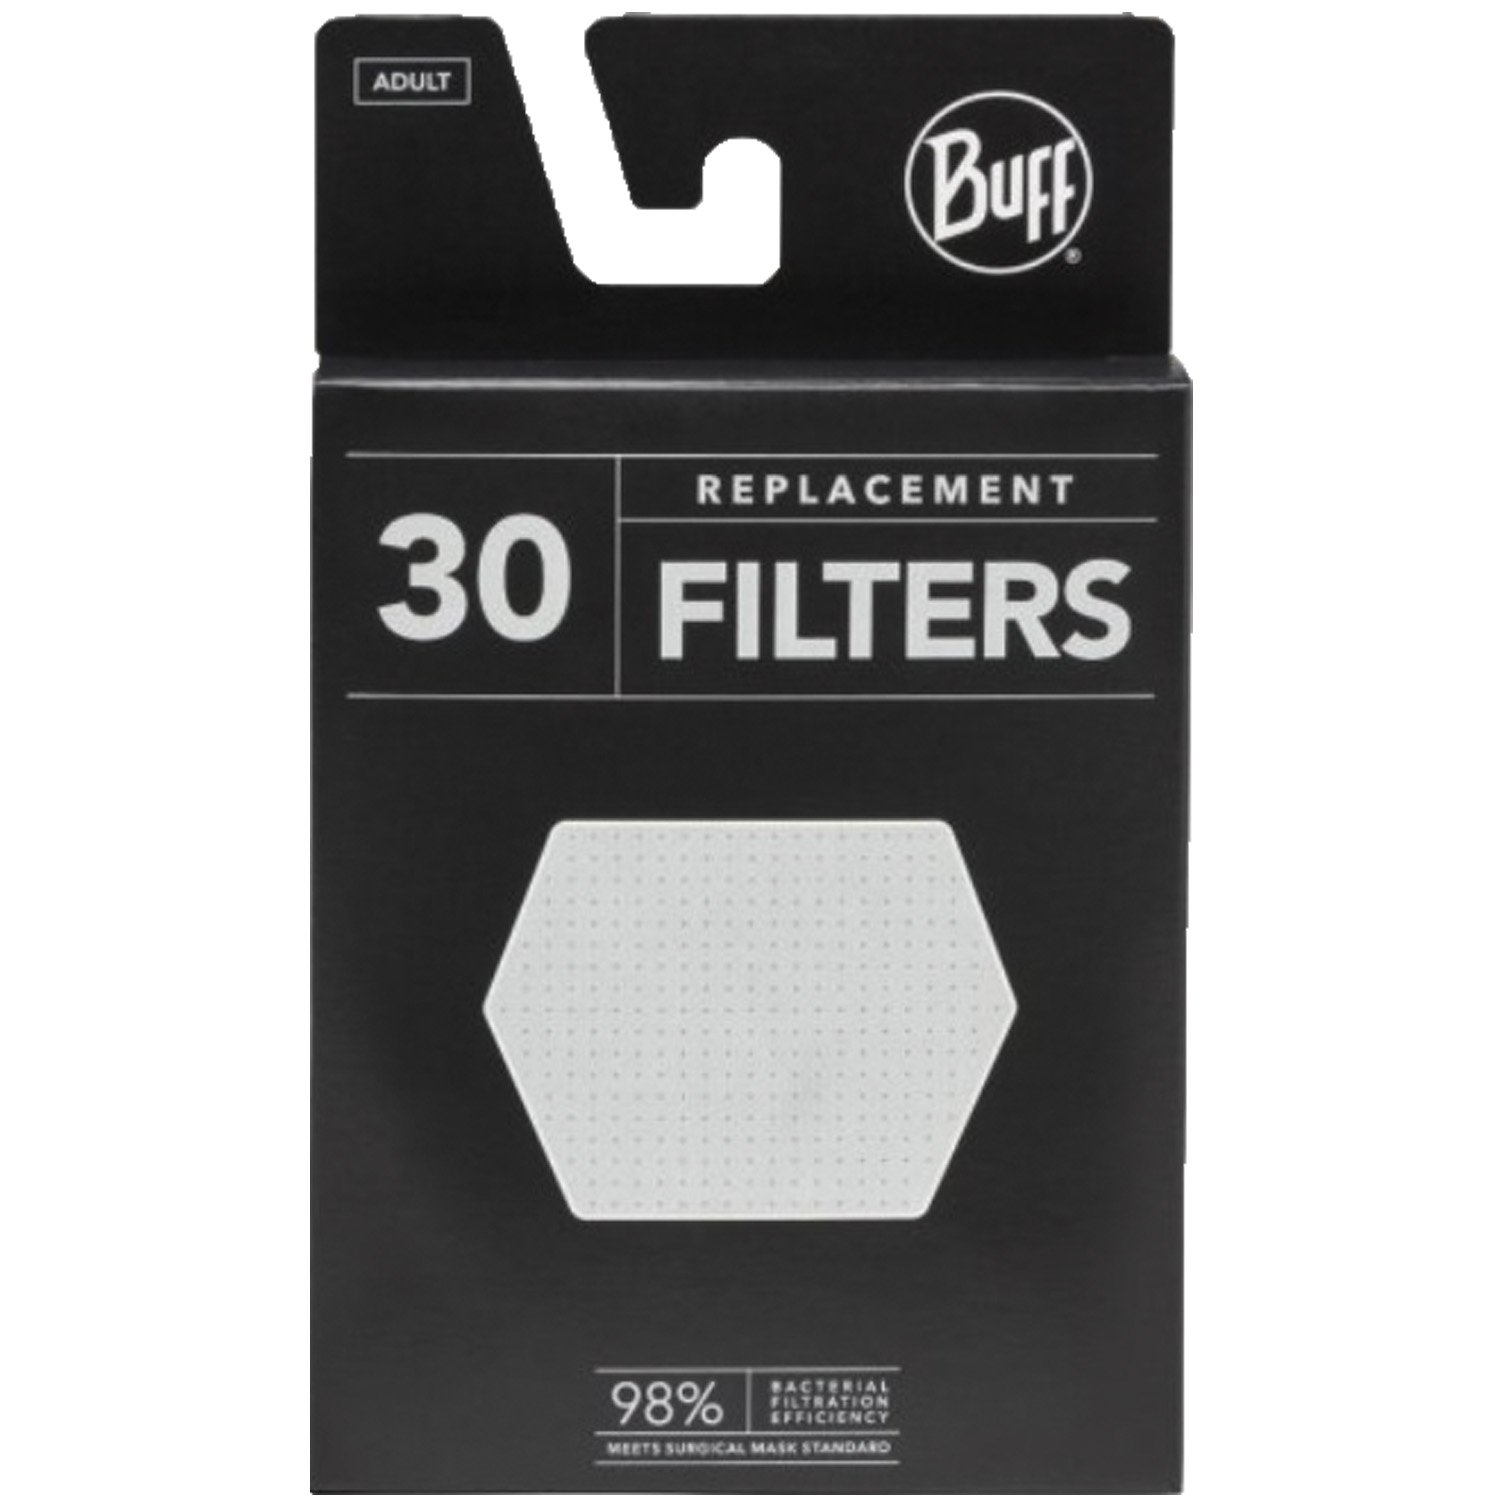 Фильтр Buff Filter, 30 шт, набор сменных фильтров, 126658.000.10.00